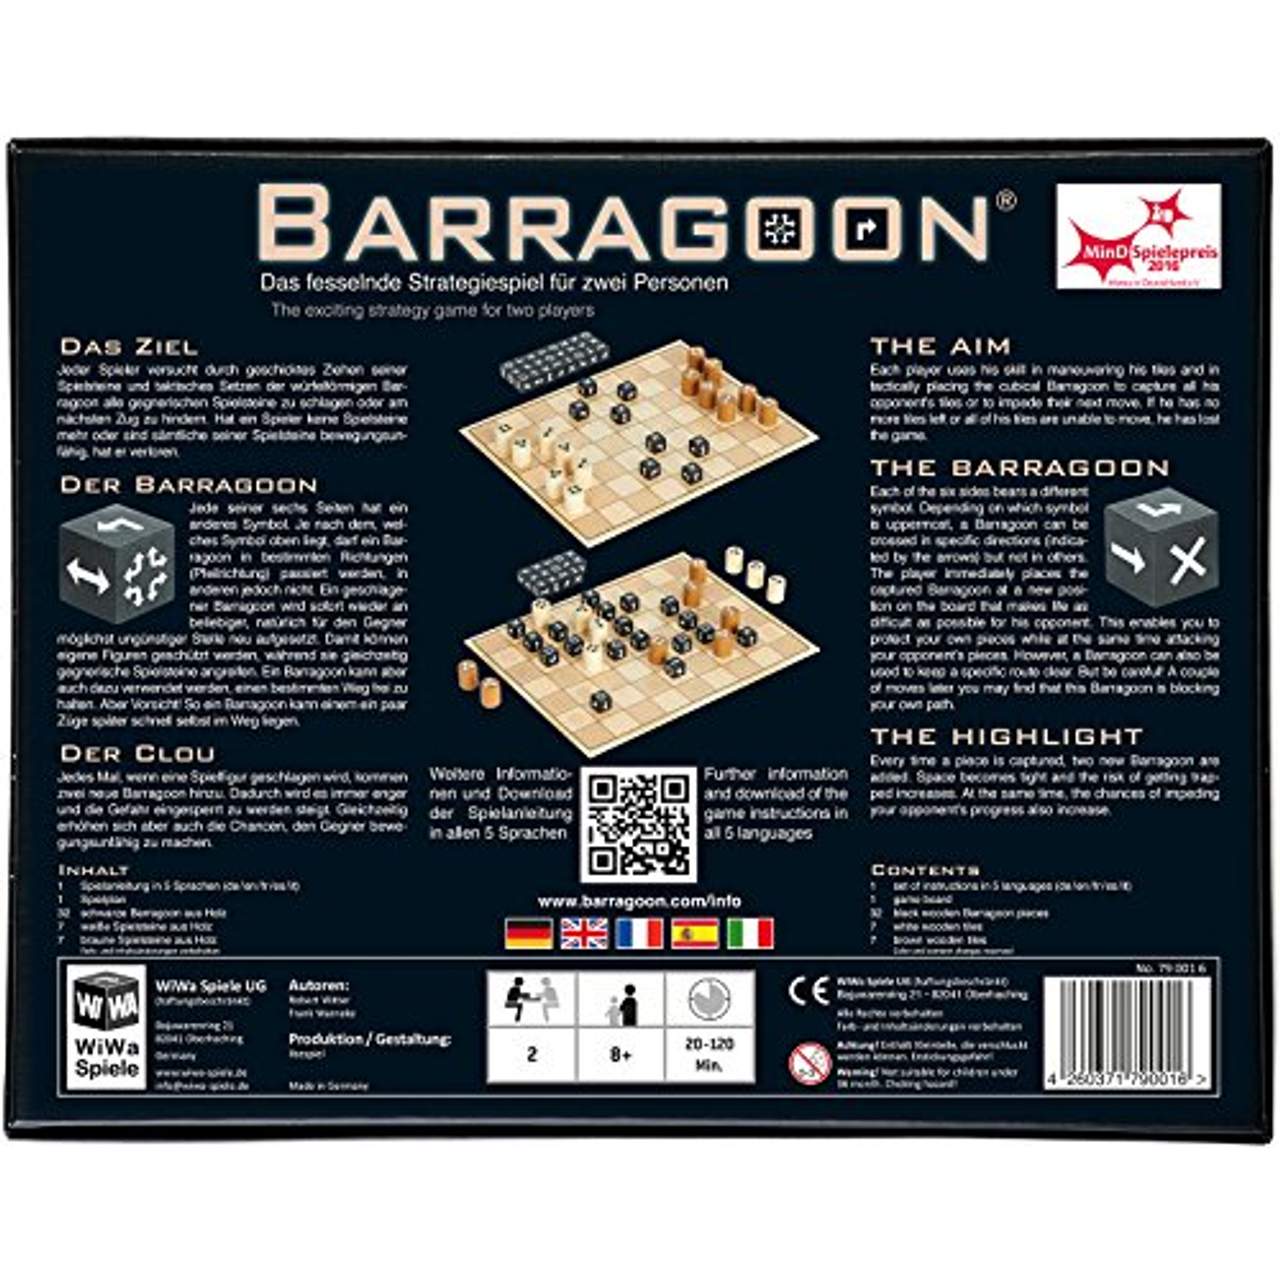 WiWa Spiele 790016 Barragoon Gewinner MinD-Spielepreis 2016